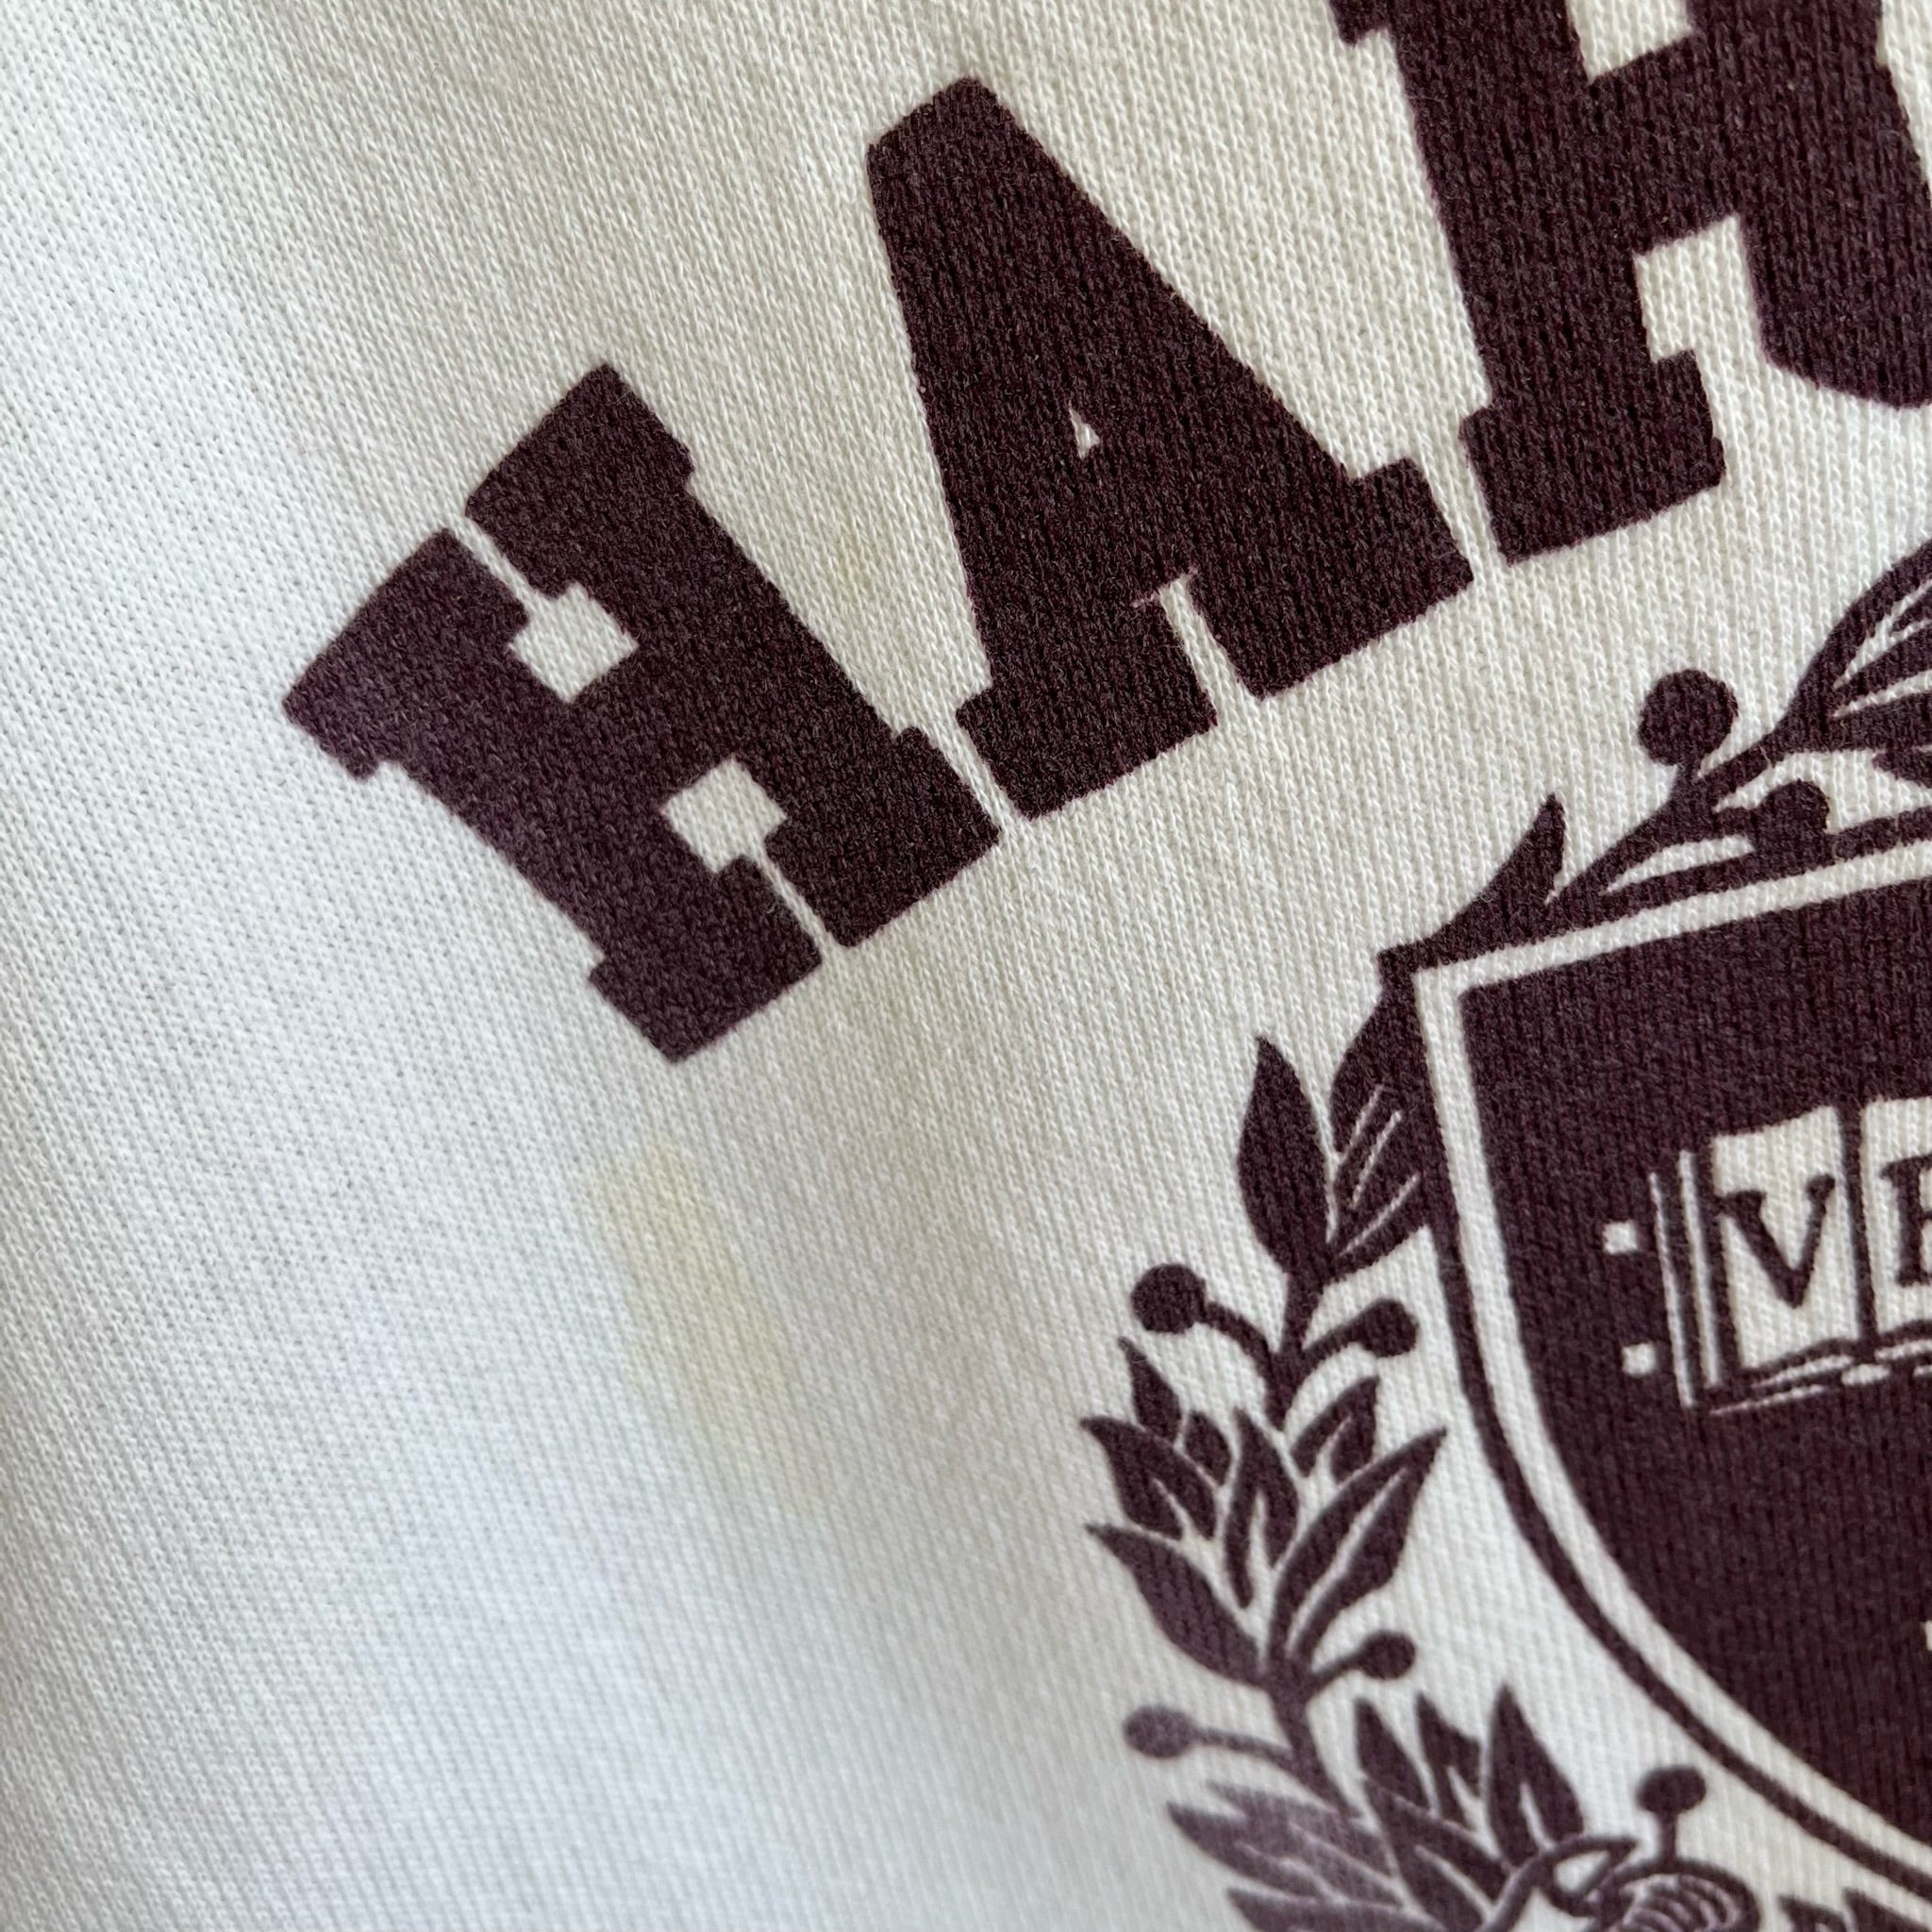 Sweat-shirt Harvard des années 1980 (les gars, il a des taches)